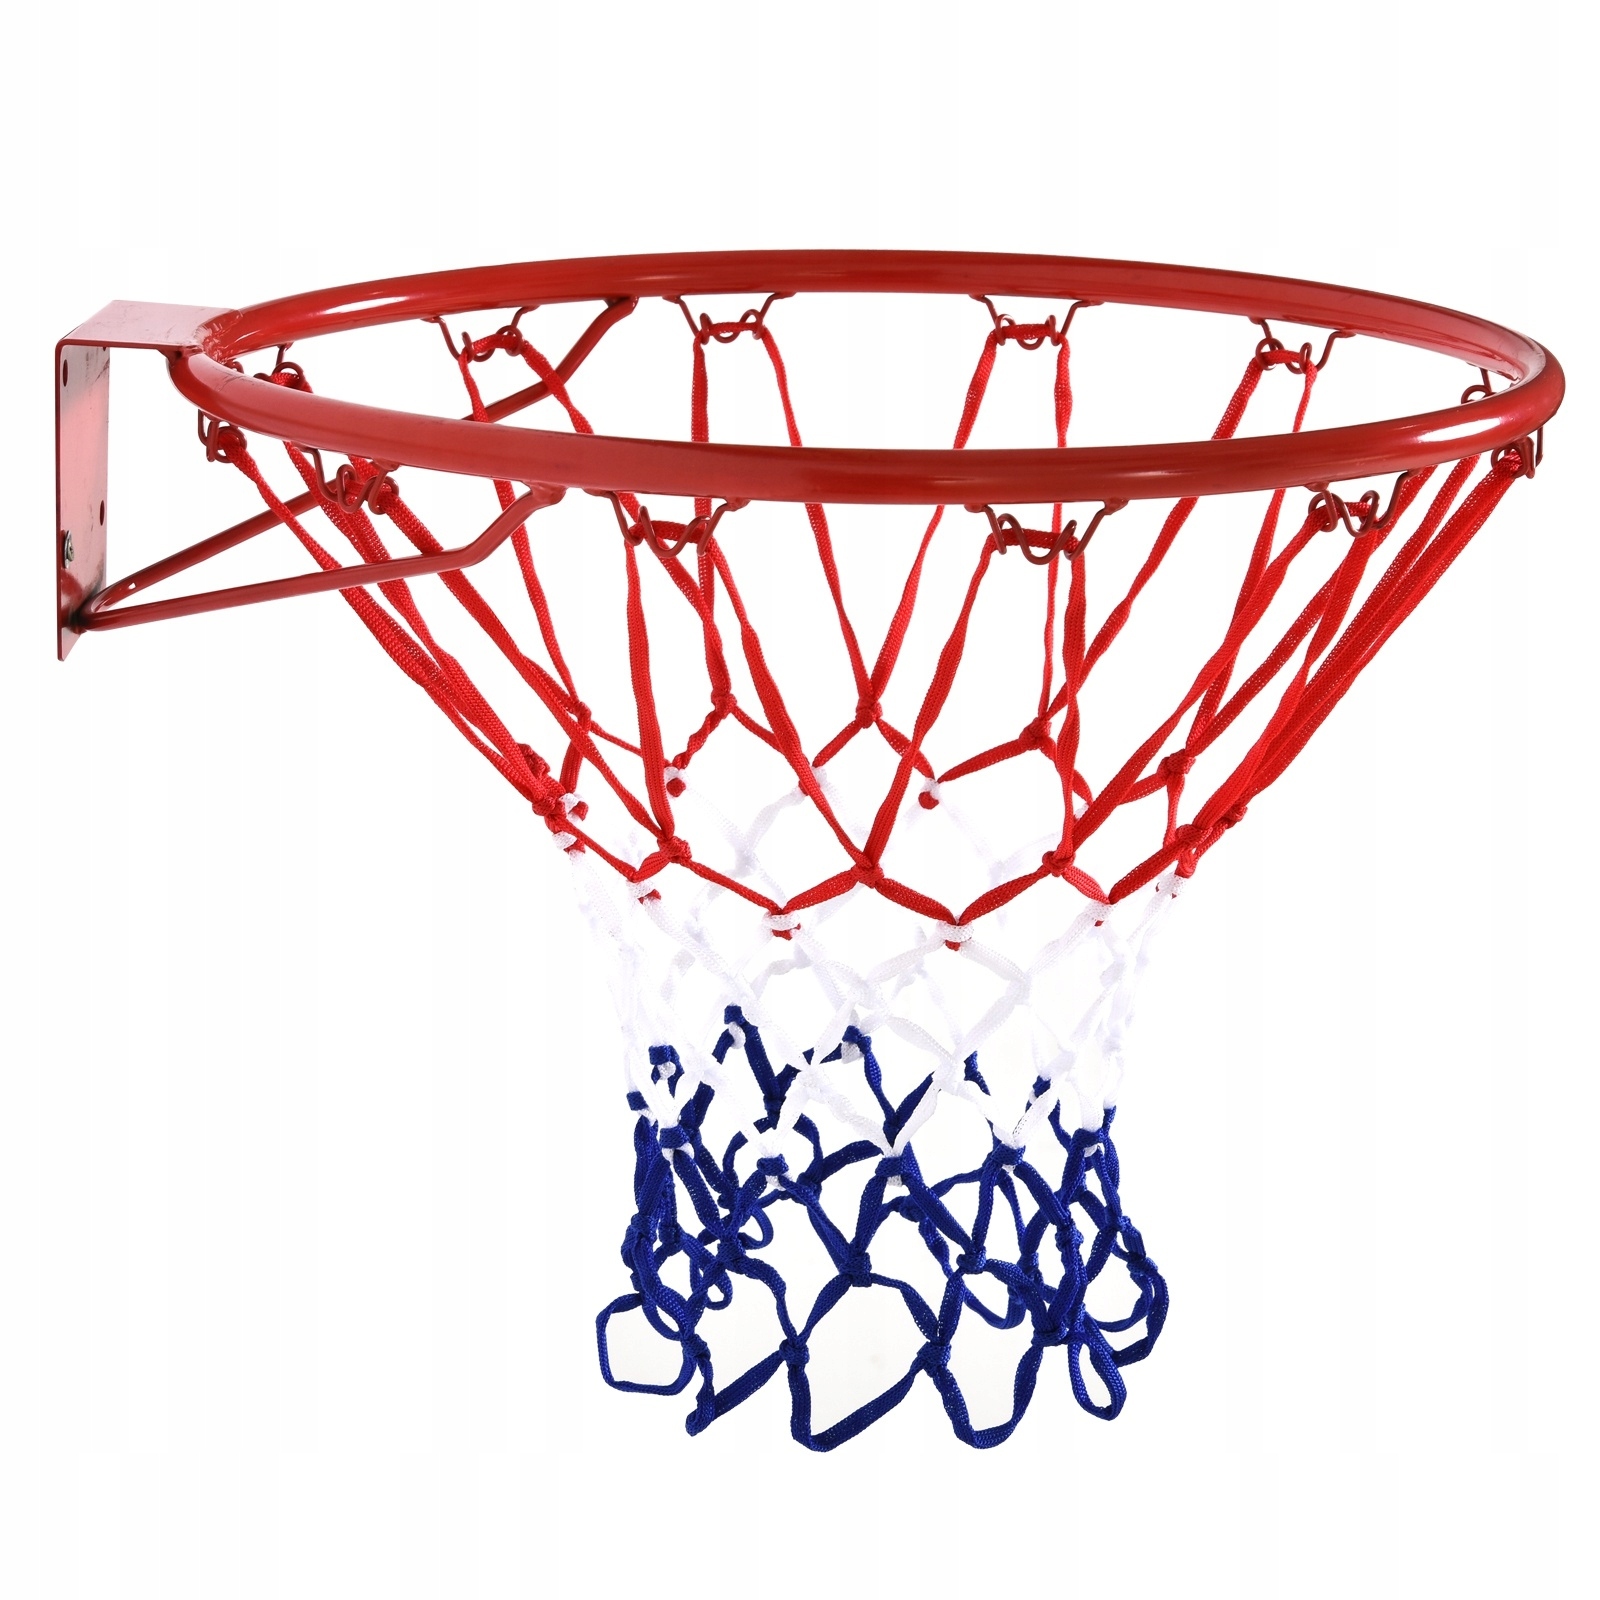 Баскетбольная корзина HOMCOM-A61-016 длина сетки 48 см